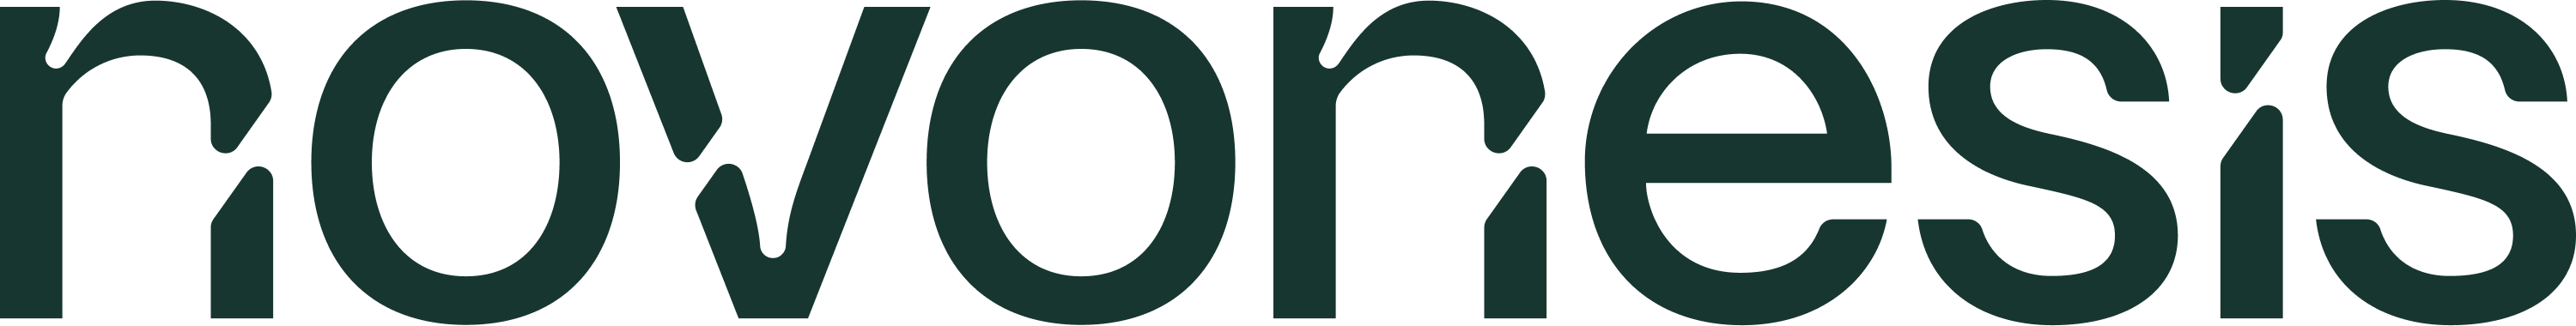 Novonesis logo og link til hjemmeside